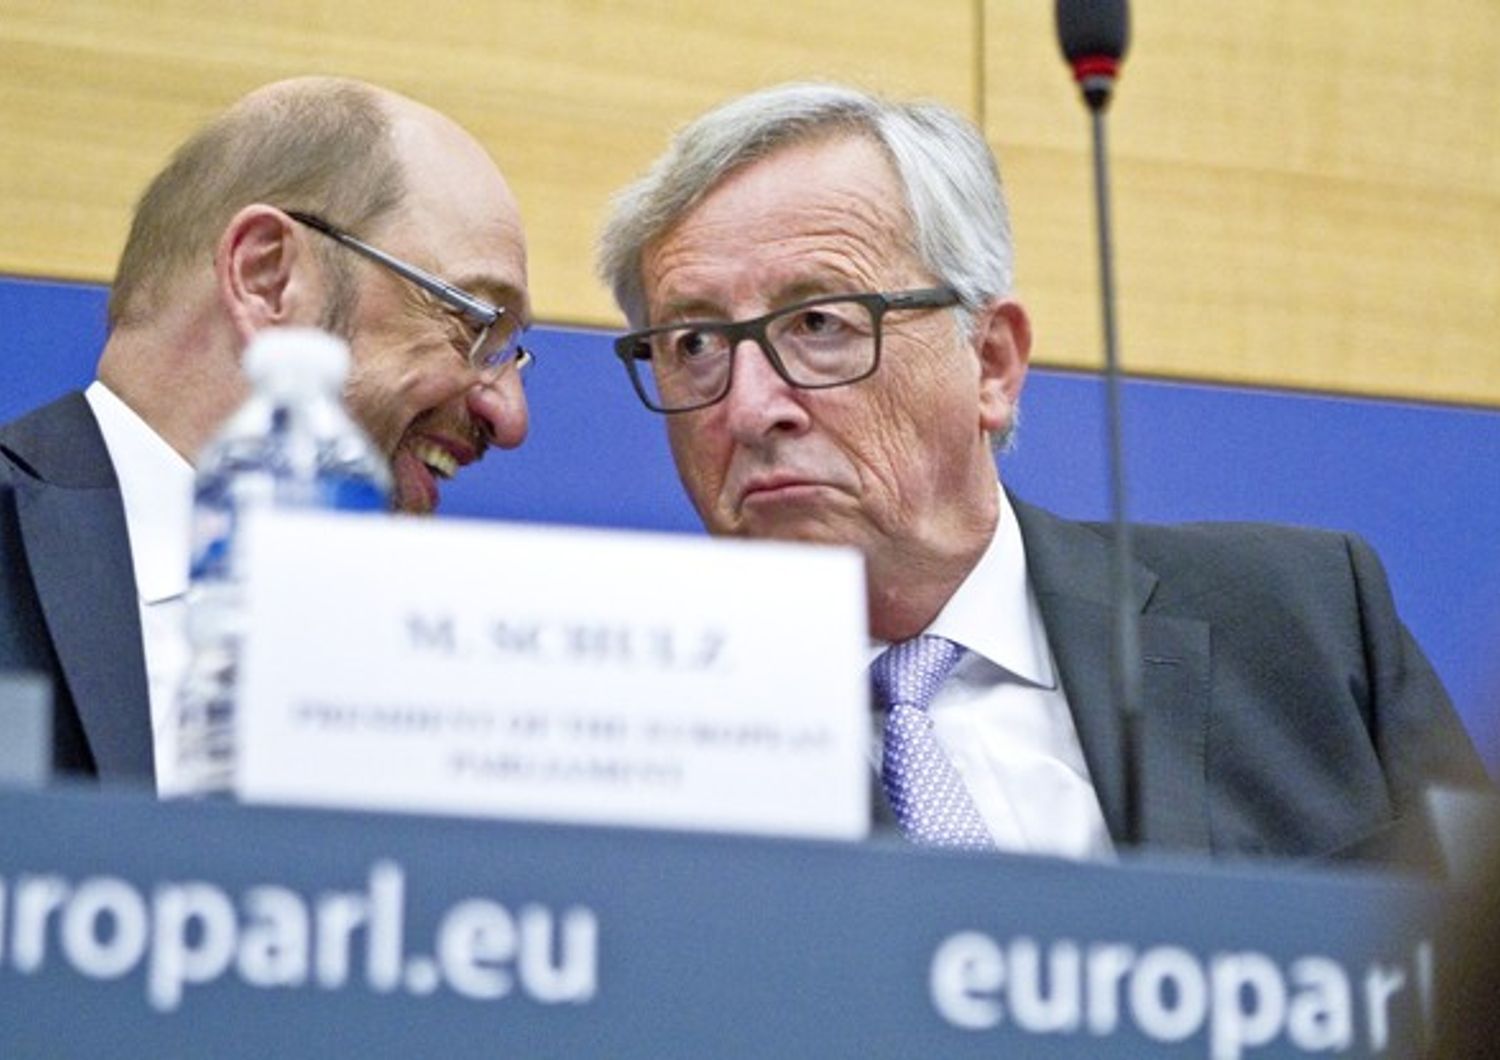 Parlamento europeo Martin Schulz e  Jean-Claude Juncker (afp)&nbsp;